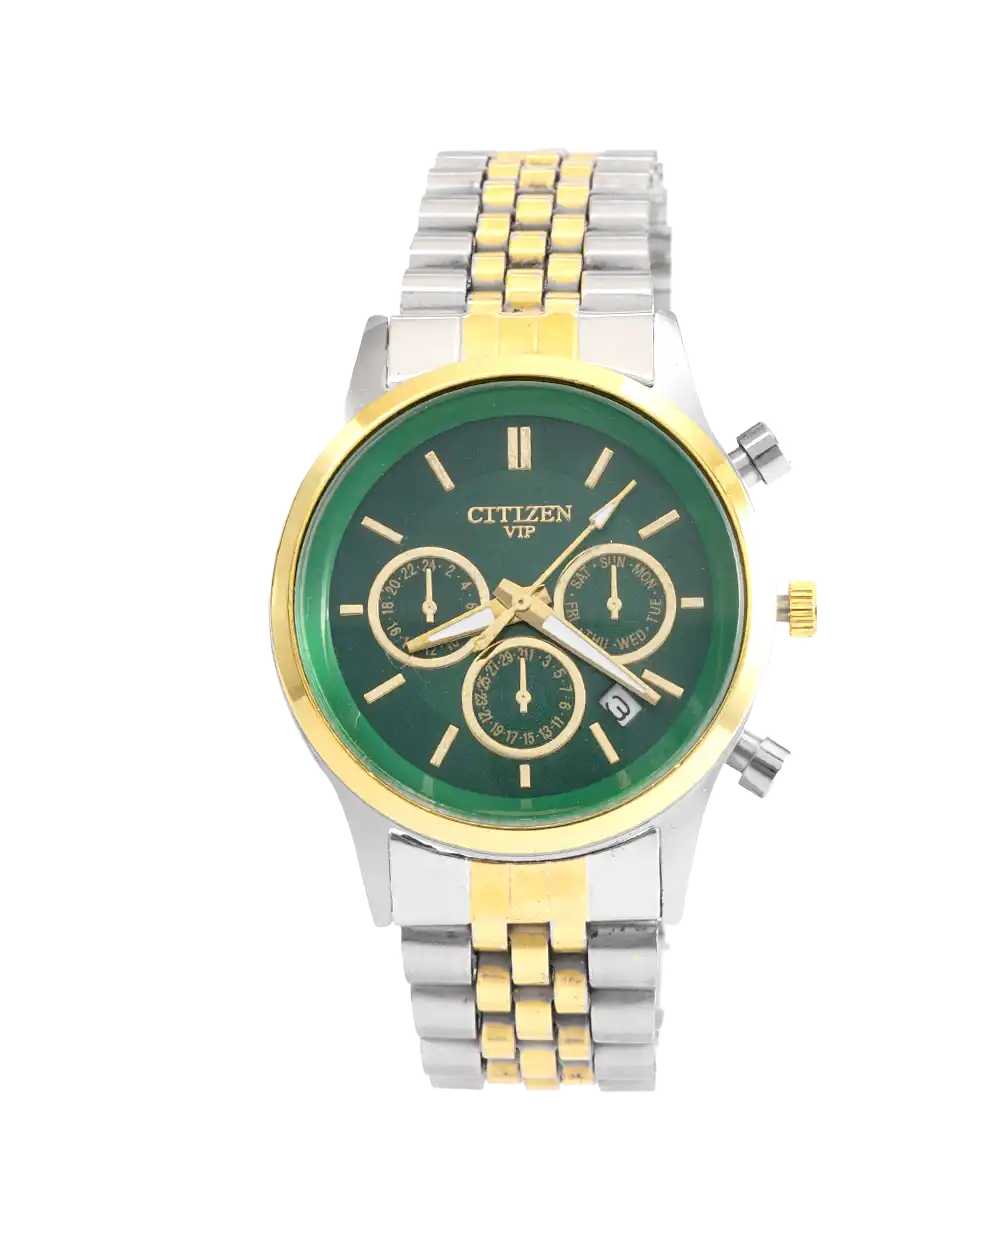 خرید ساعت مچی زنانه سیتیزن CITIZEN طرح VIP مدل 1690 صفحه سبز با بهترین قیمت به همراه جعبه ی شکیل و ارسال رایگان به سراسر ایران | ساعت دخترانه شیک